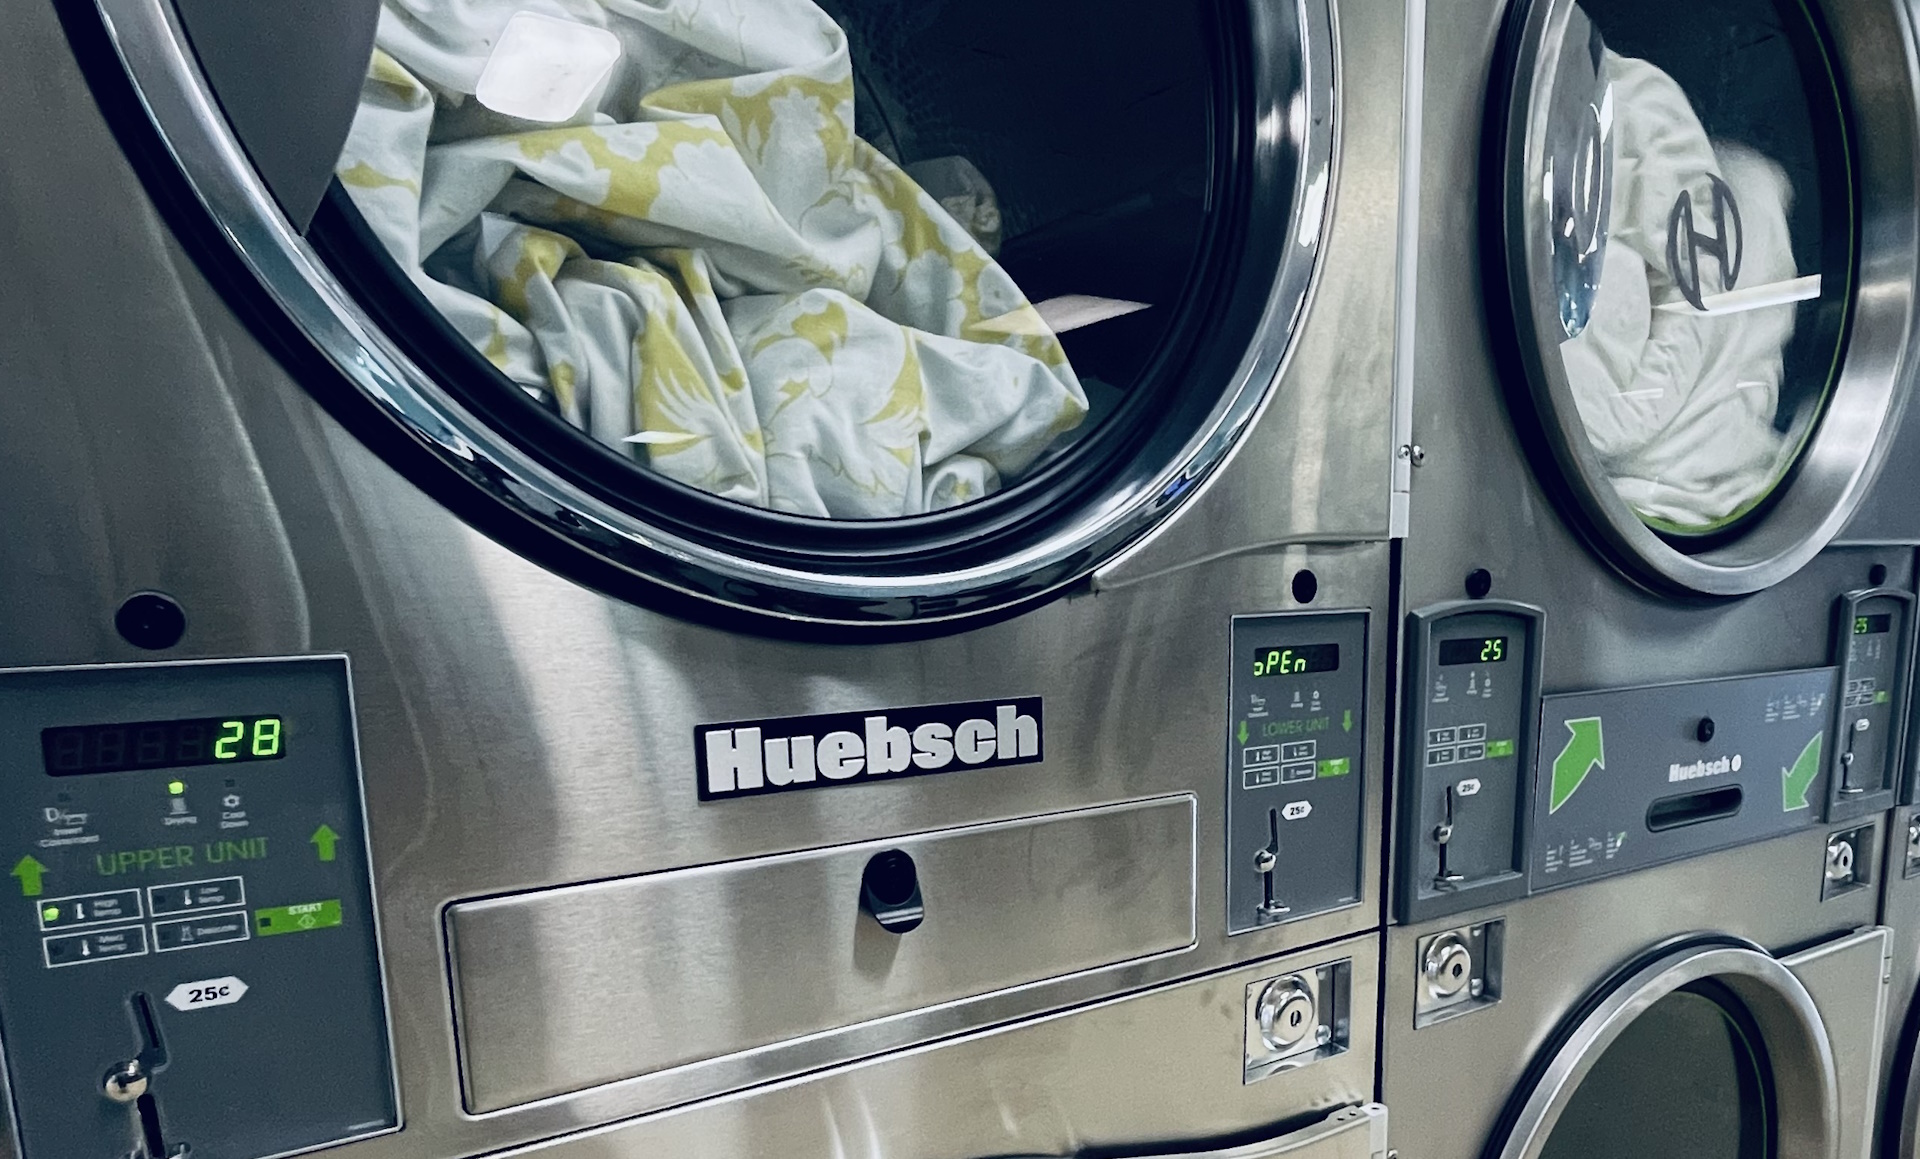 Laundromat Image